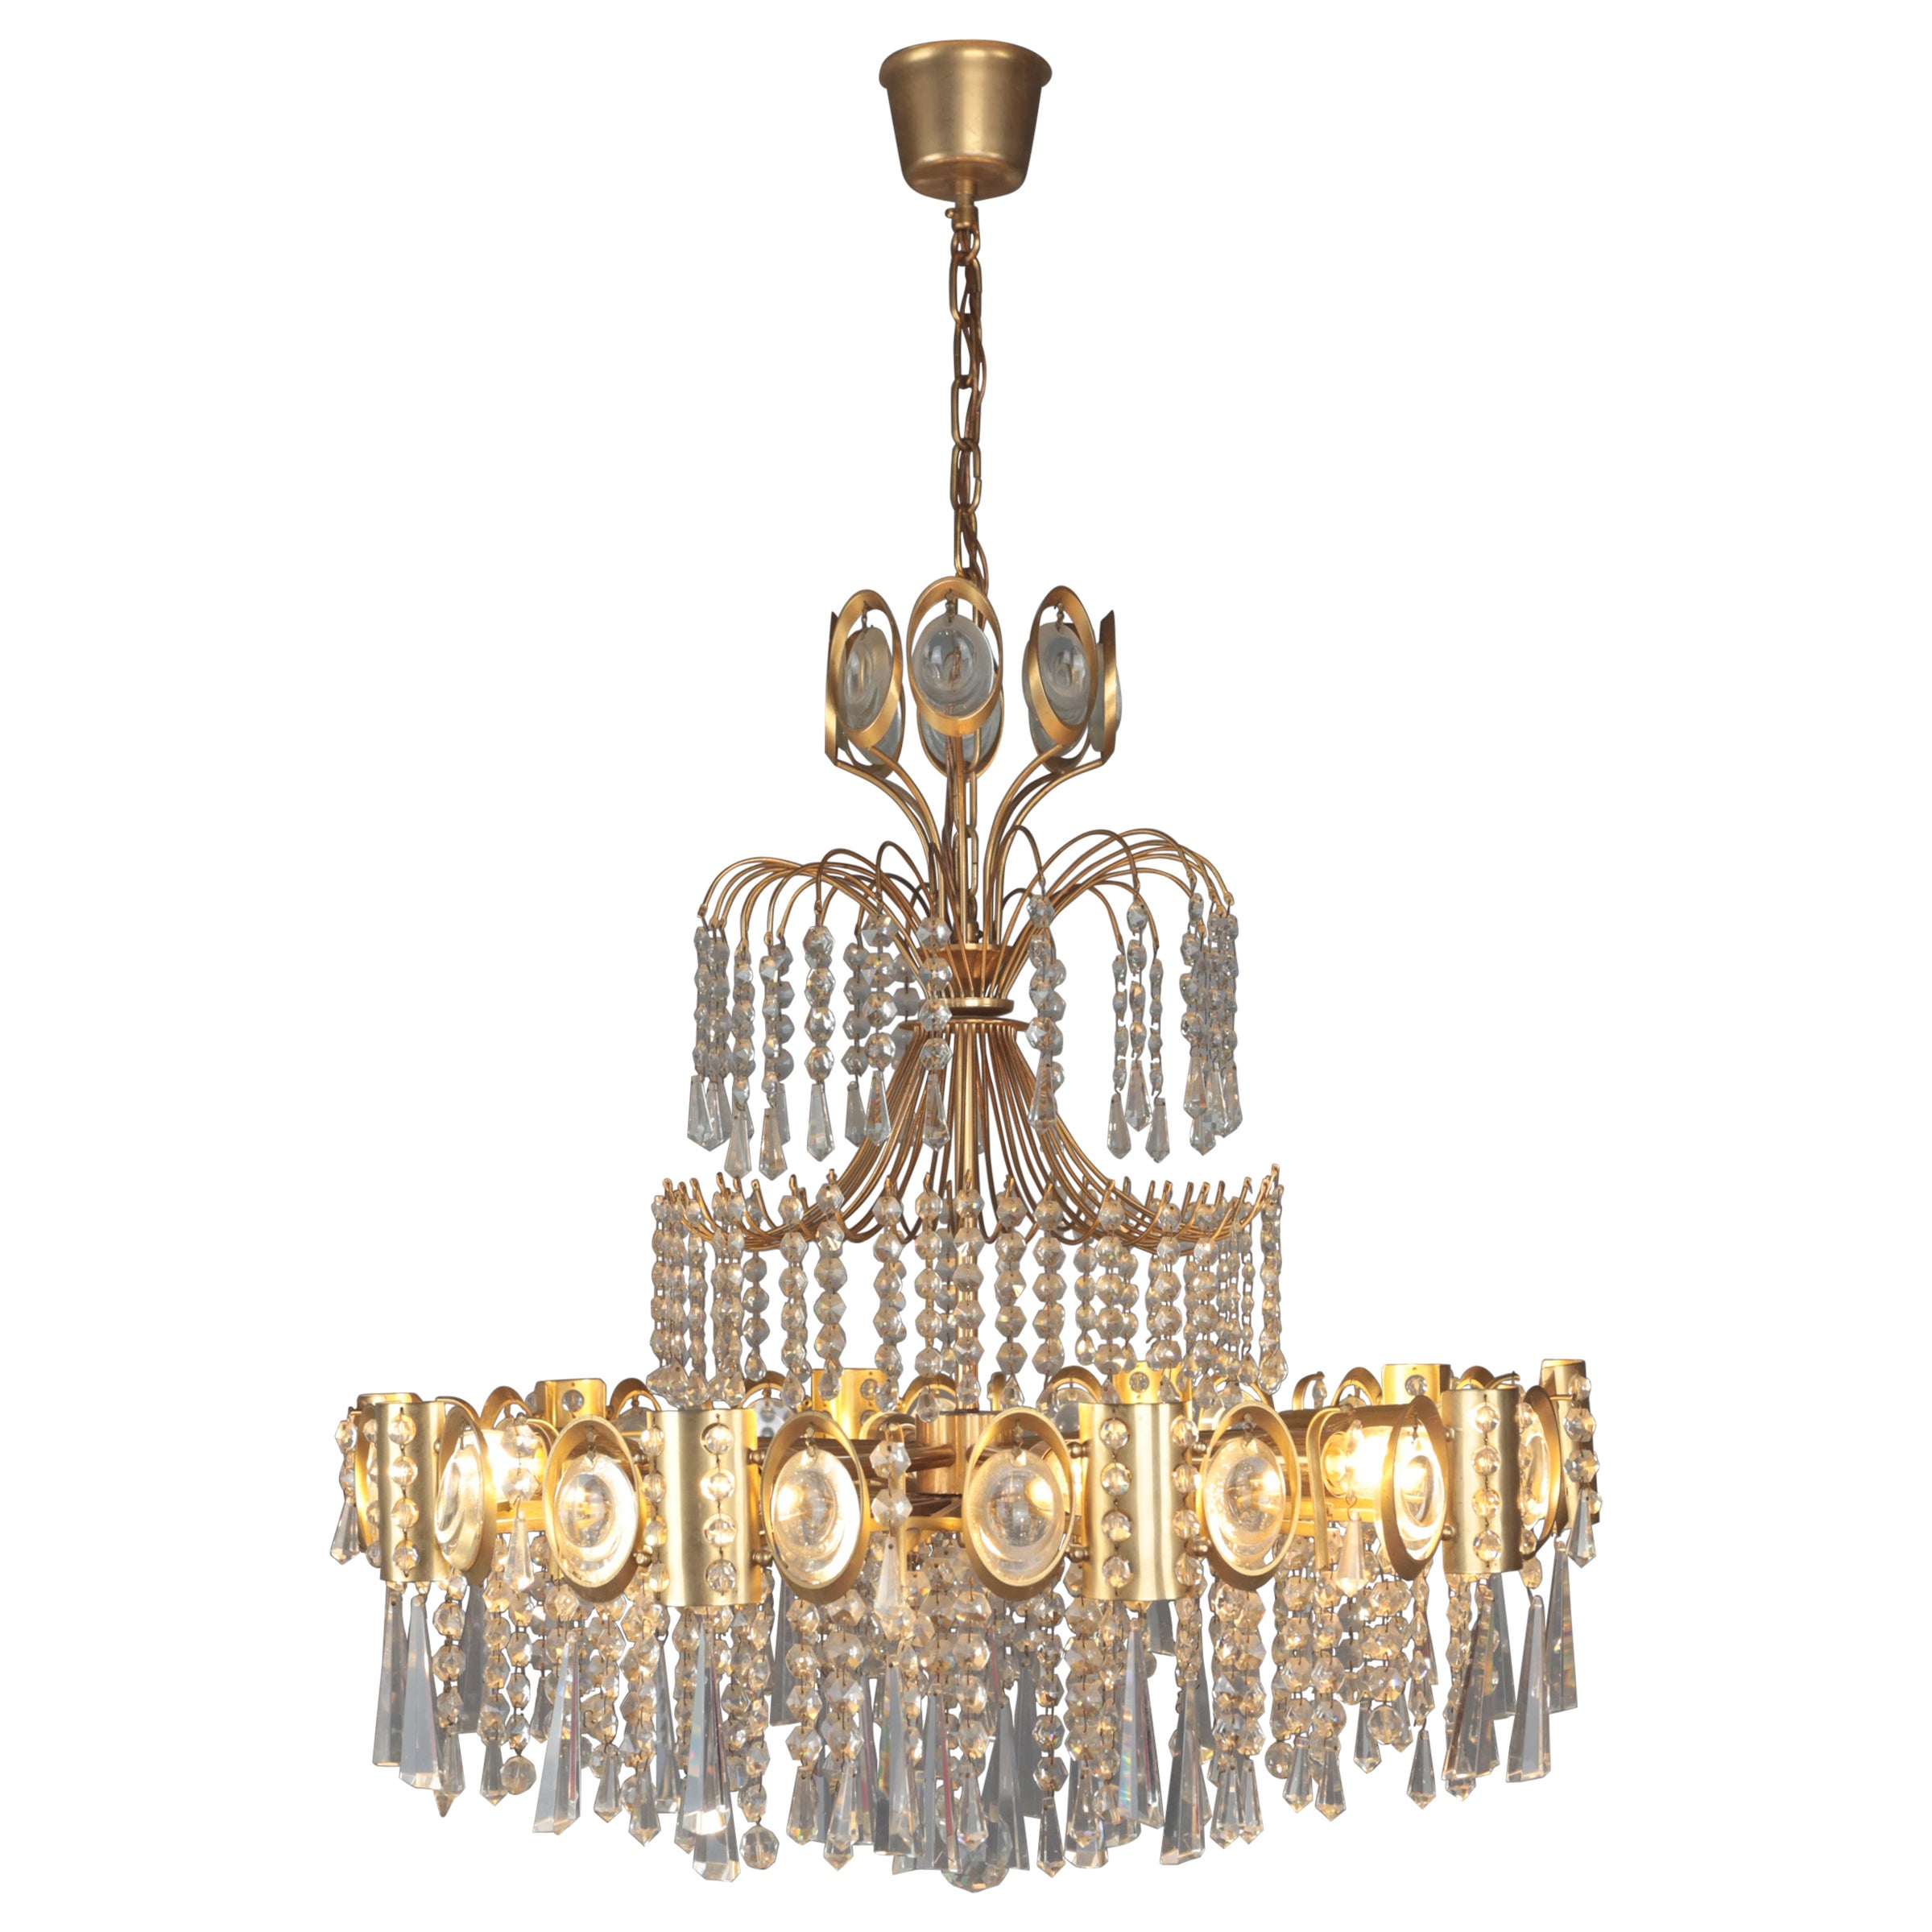 Designer vintage chandelier with cascading pendants